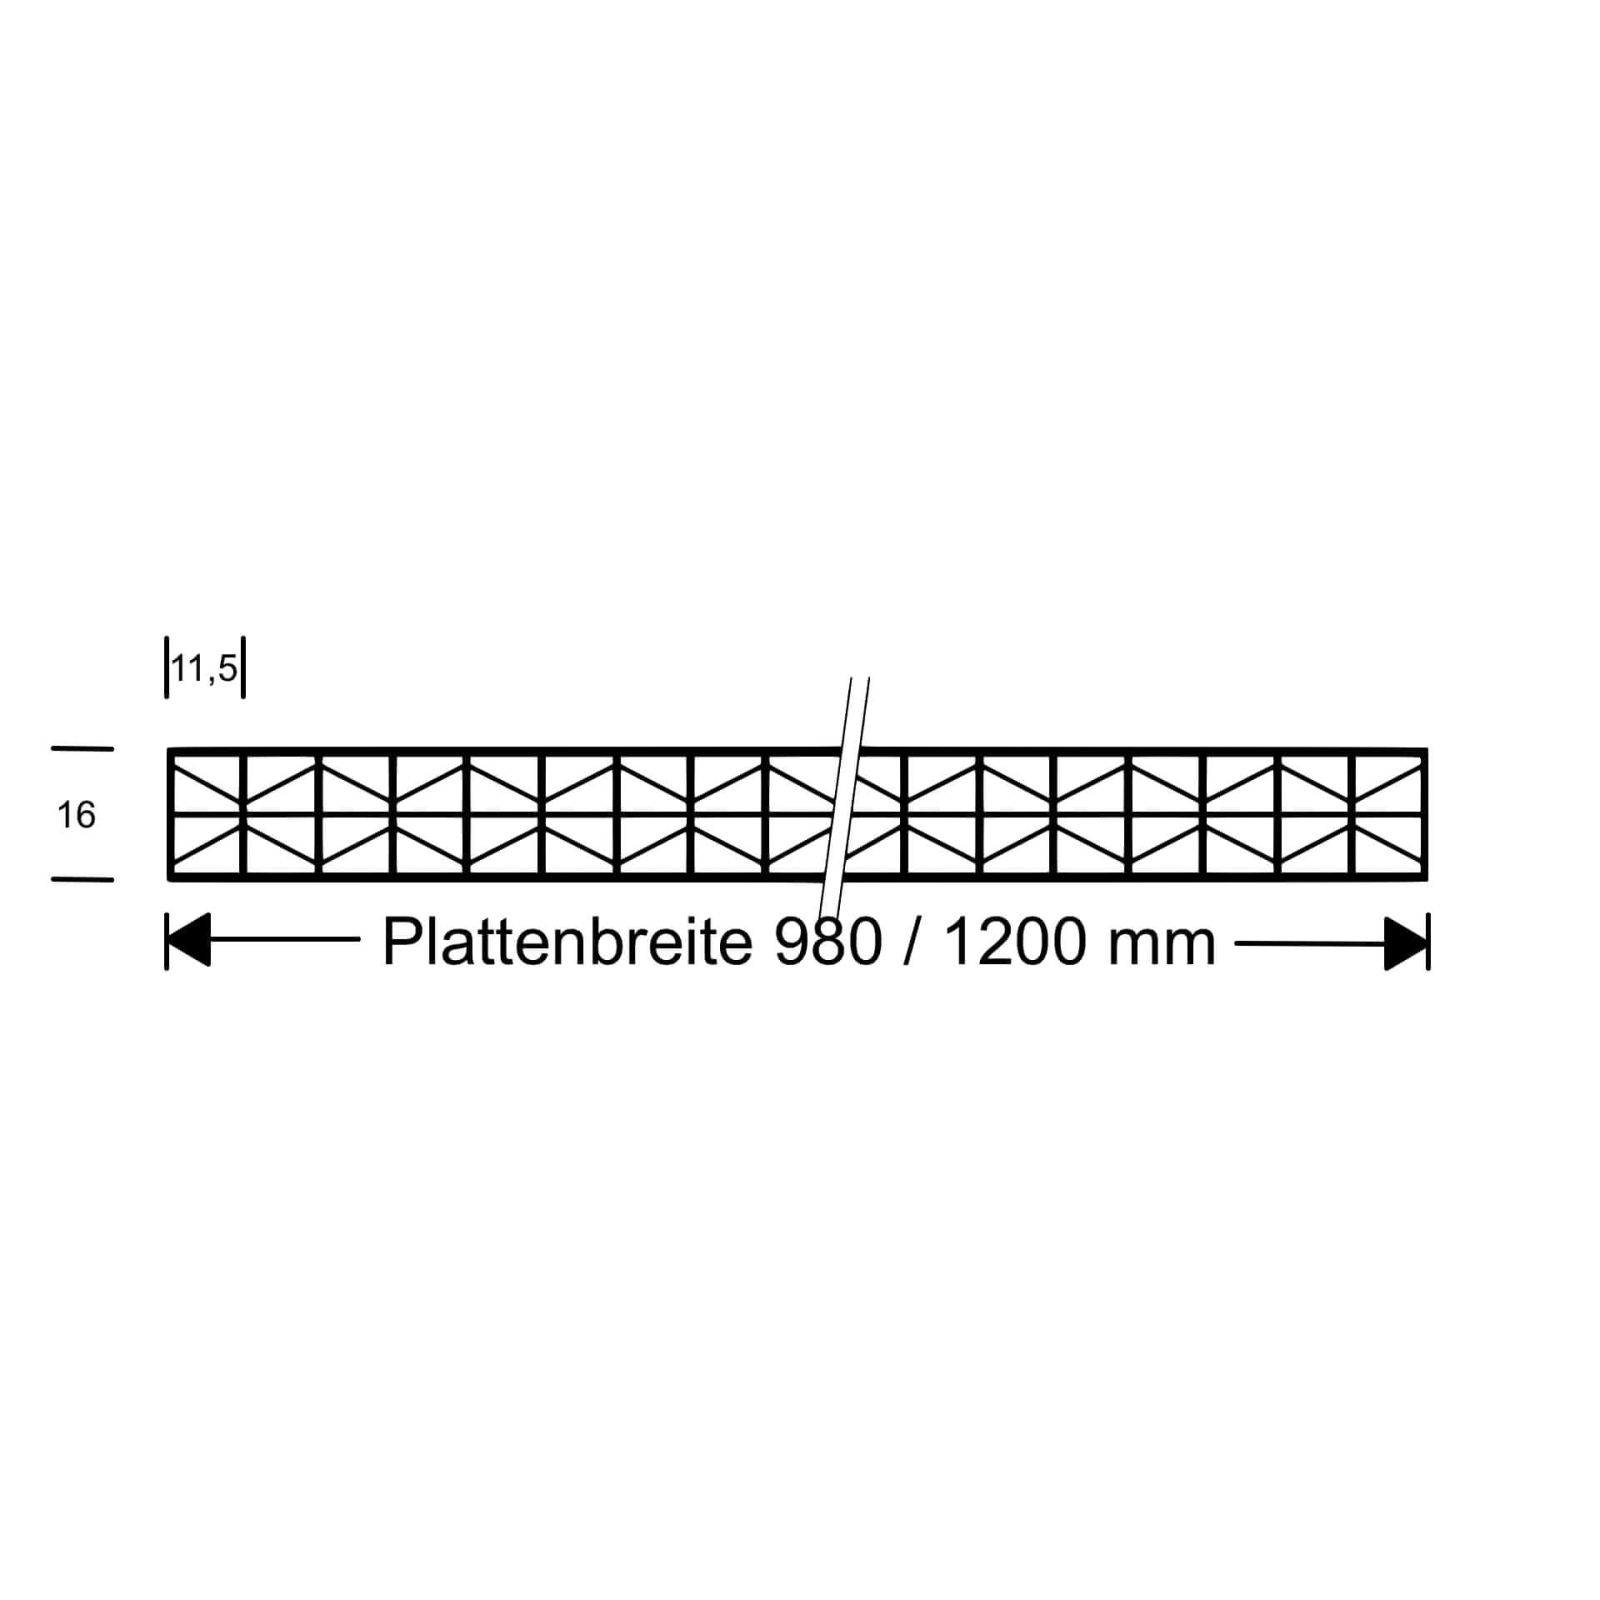 Polycarbonat Stegplatte | 16 mm | Profil Zevener Sprosse | Sparpaket | Plattenbreite 1200 mm | Klar | Extra stark | Breite 3,79 m | Länge 2,00 m #10